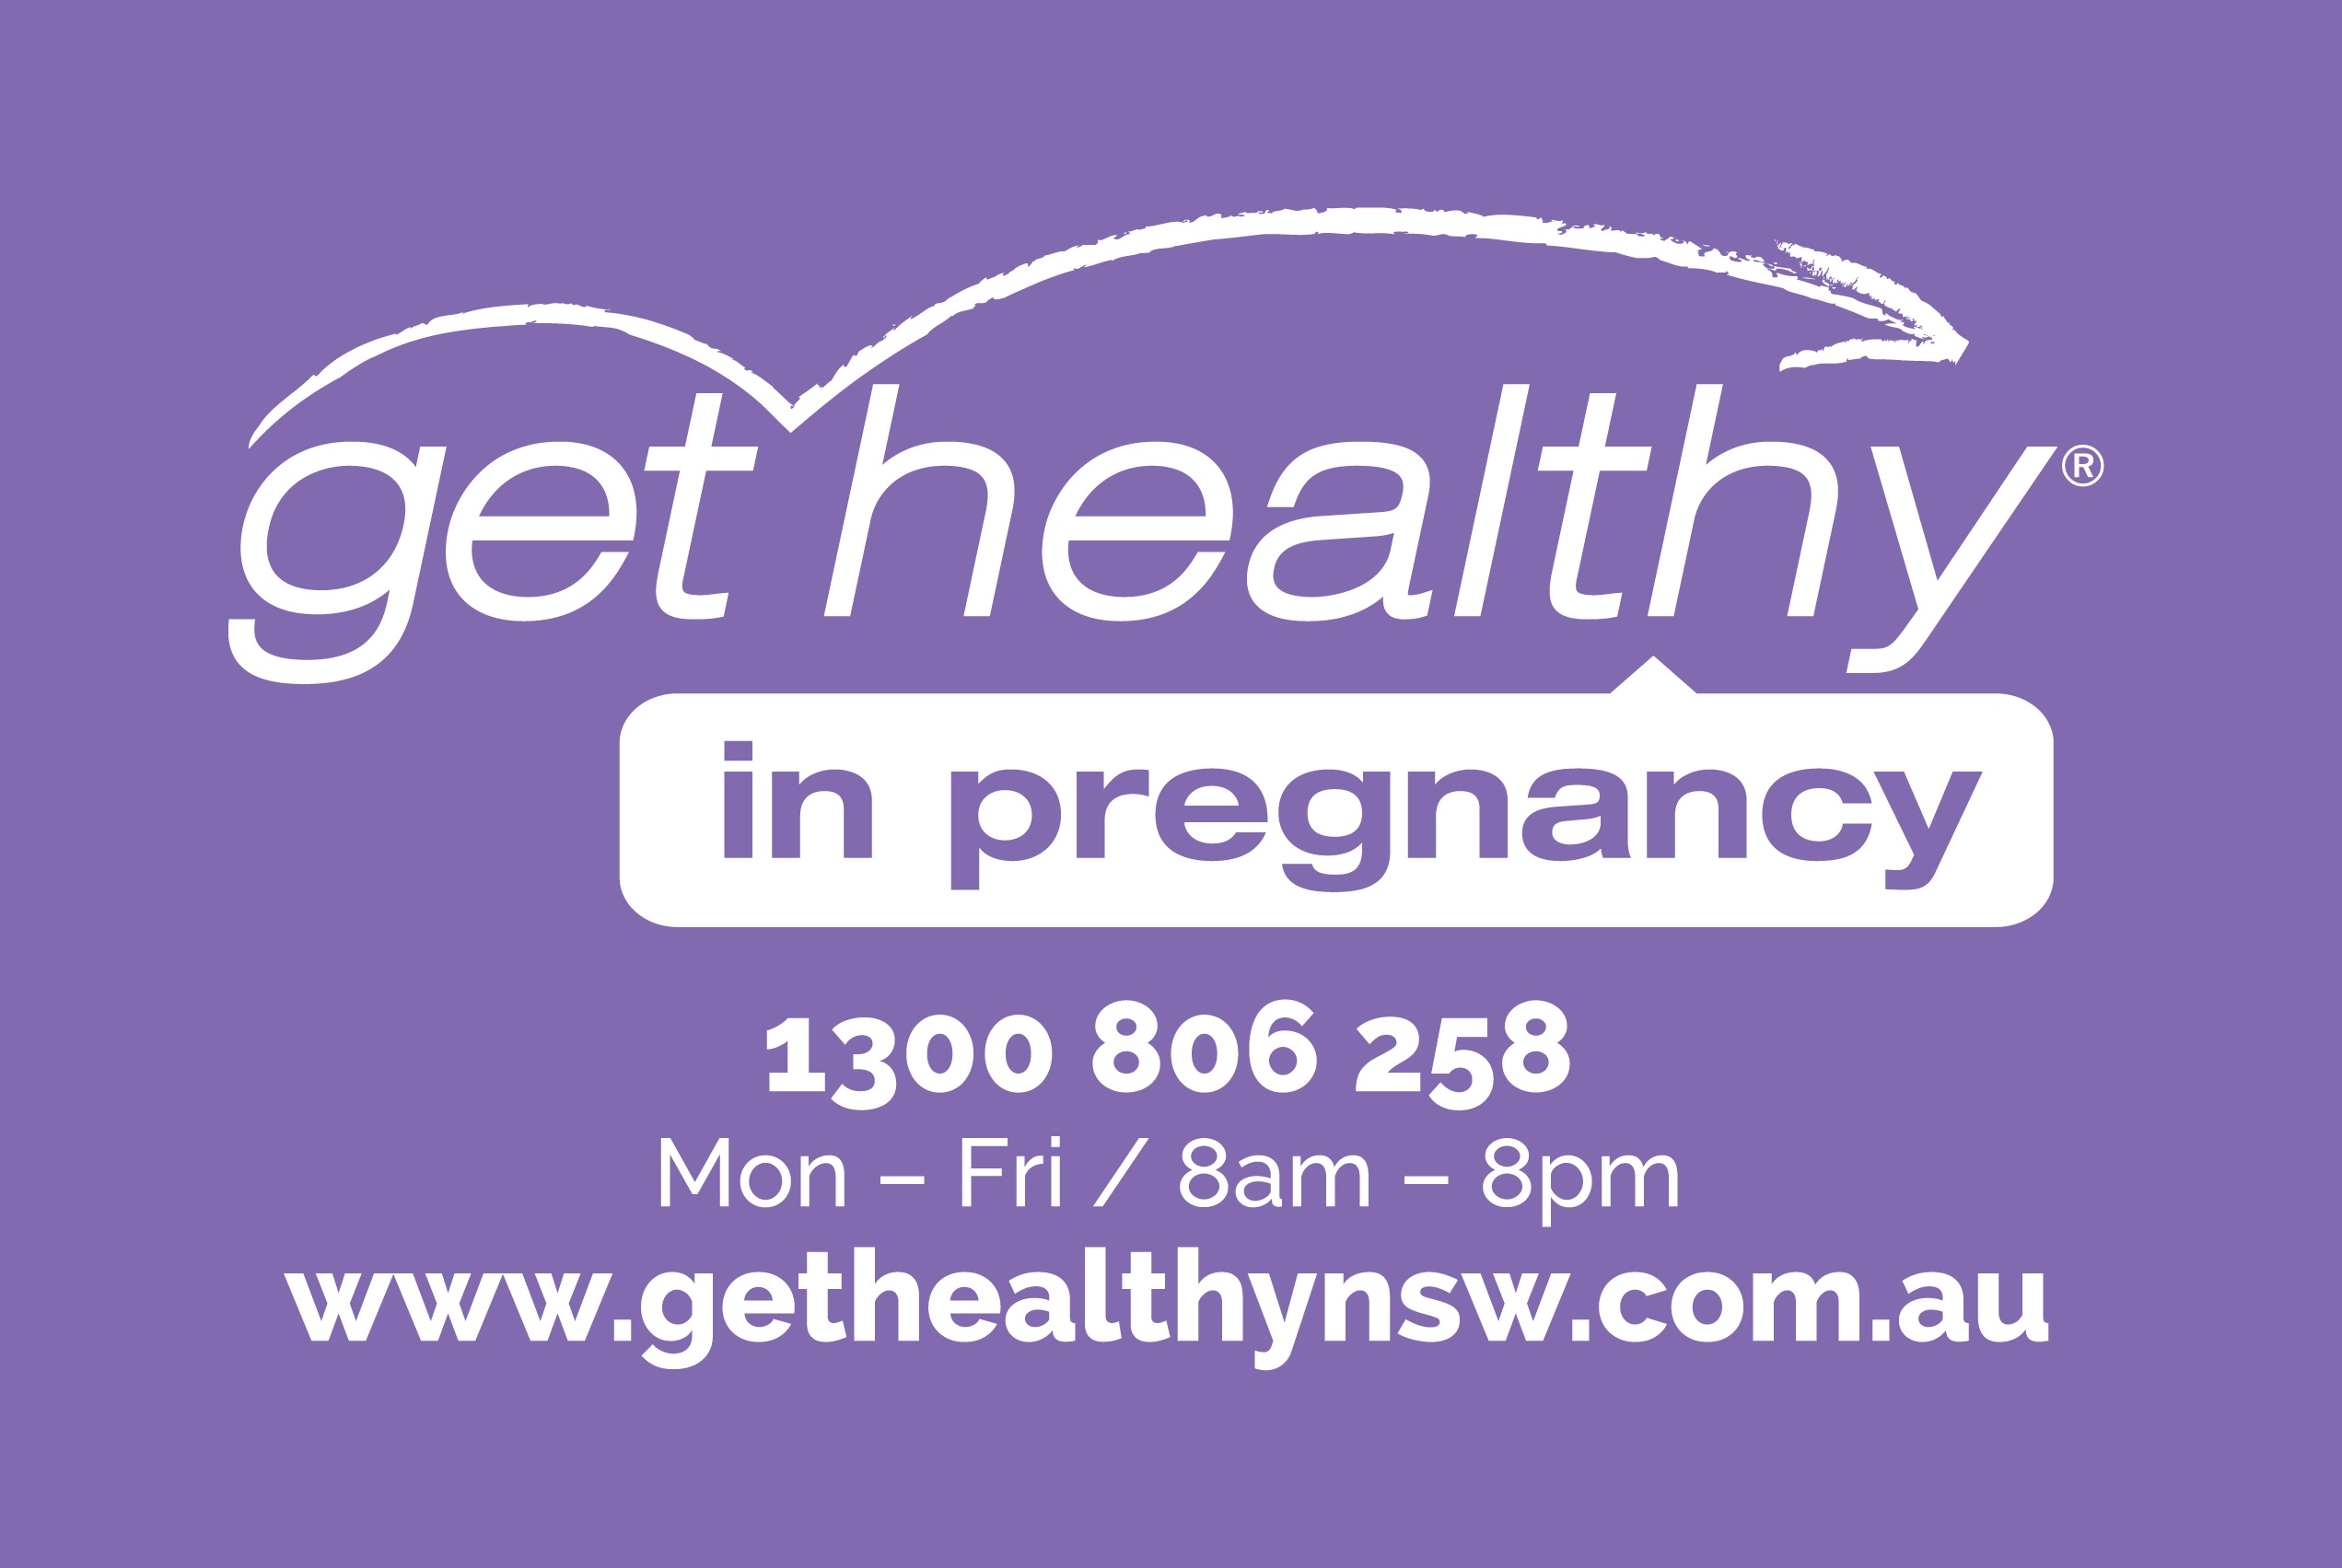 https://www.gethealthynsw.com.au/program/get-healthy-in-pregnancy